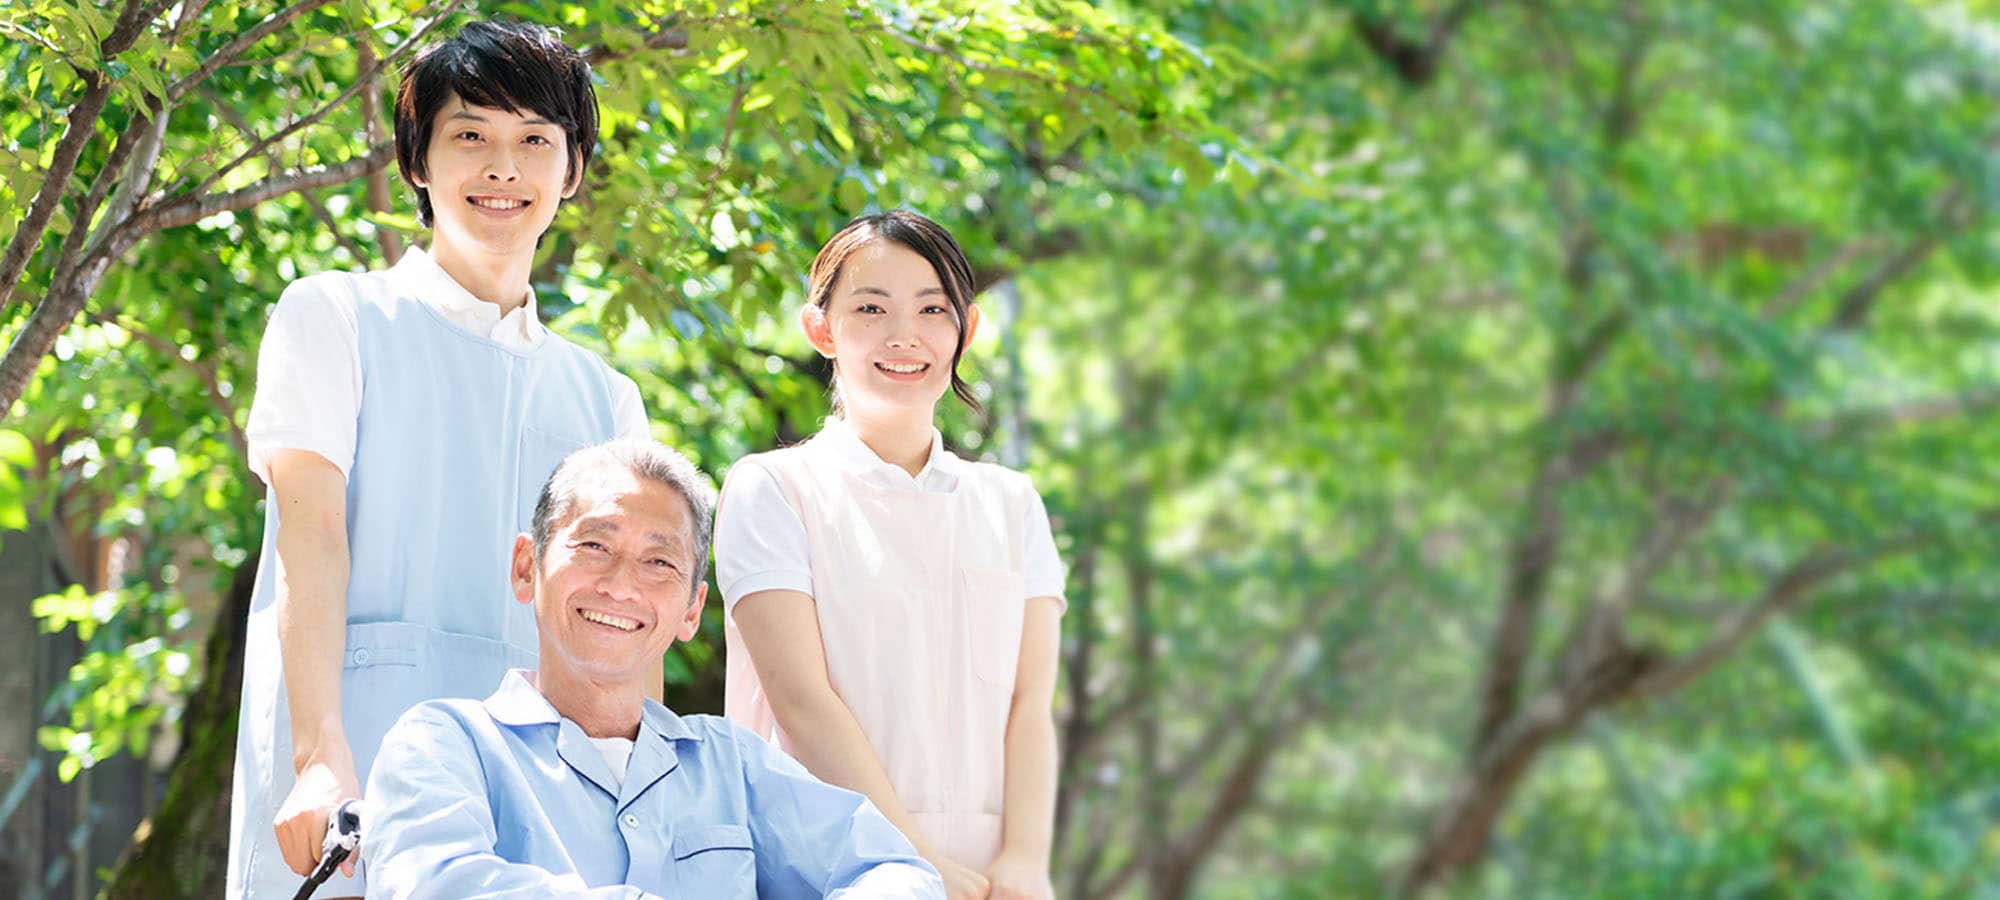 茨城県で老人ホームをお探しなら、老人ホーム探しの専門家 老人ホーム介護施設相談窓口 ライフリスタにお任せください。